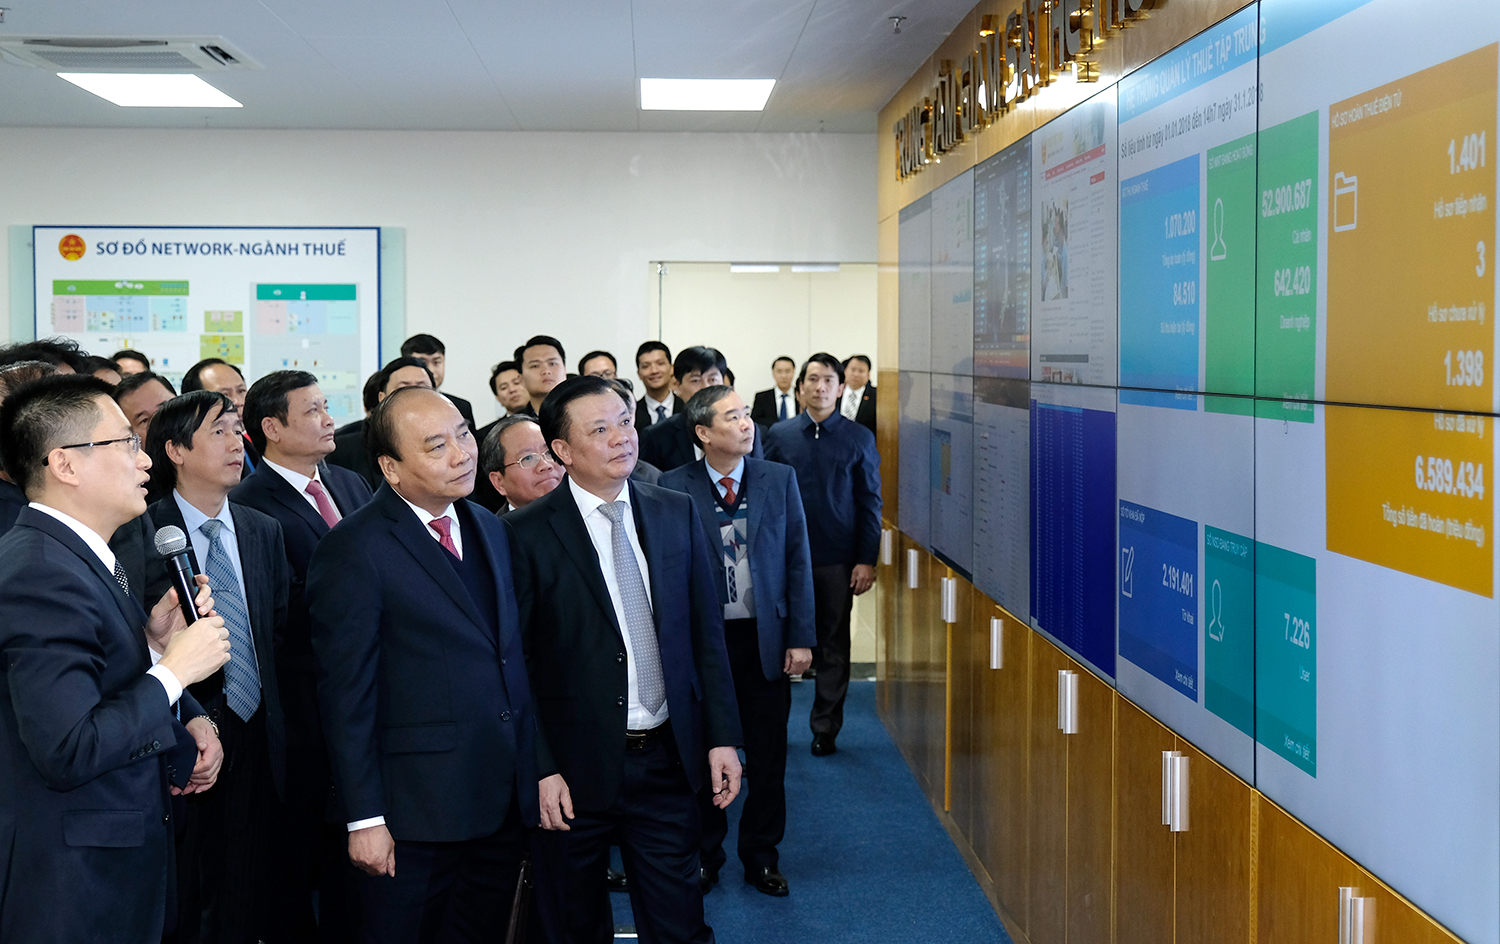 Thủ tướng thăm Trung tâm giám sát hệ thống Công nghệ thông tin Tổng cục Thuế. Ảnh: VGP/Quang Hiếu.